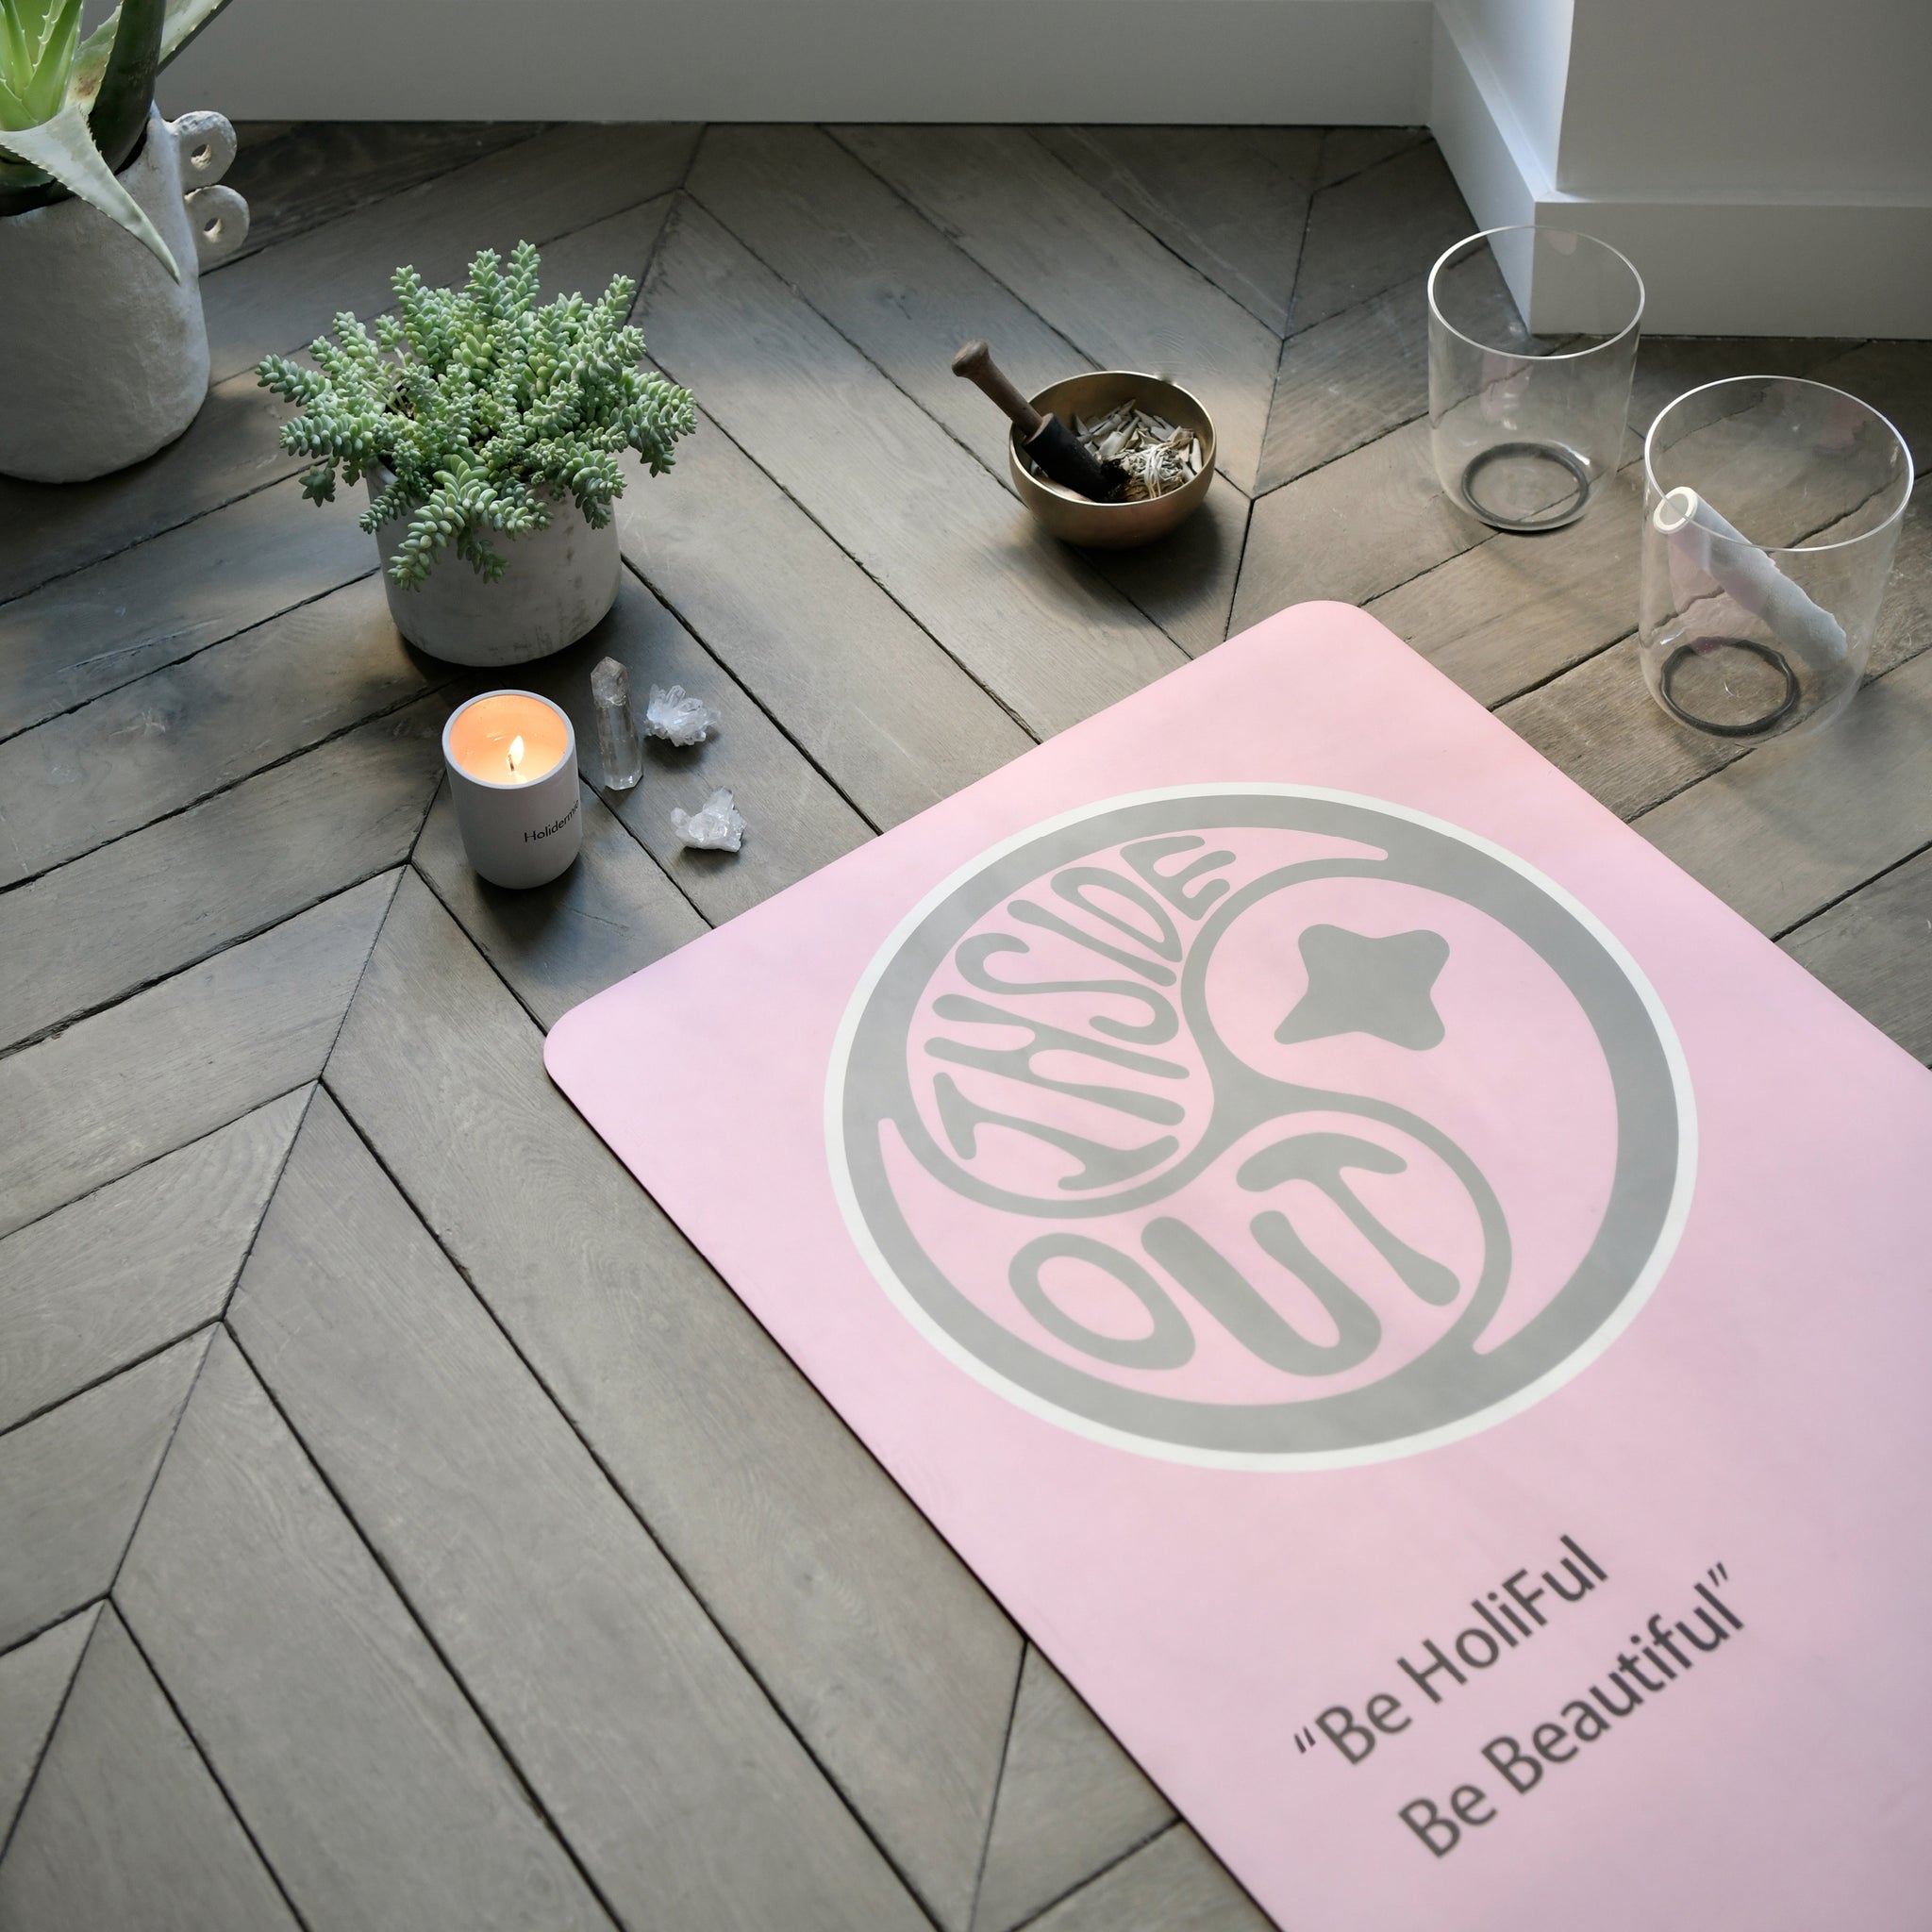 Meilleur tapis de yoga de qualité antidérapant - Yogimag